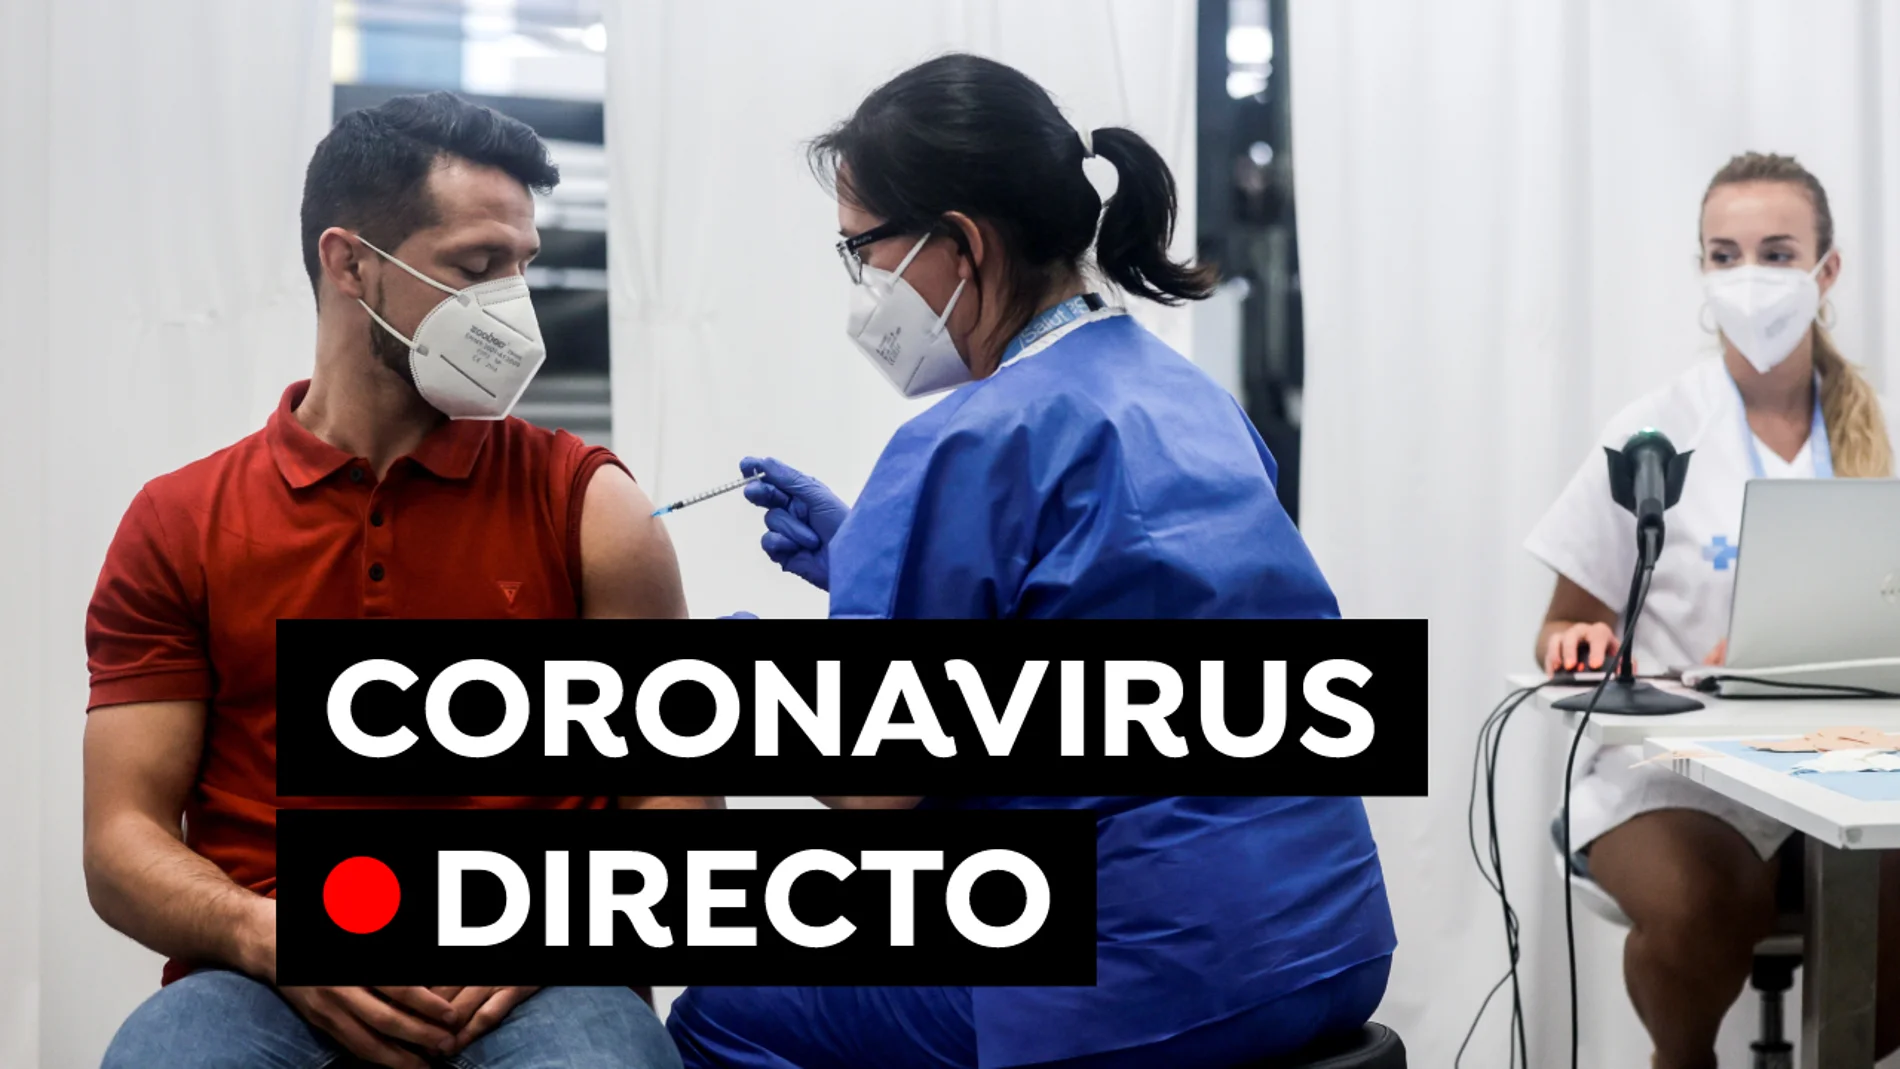 Coronavirus España: Vacuna contra el COVID-19, incidencia acumulada y contagios, en directo